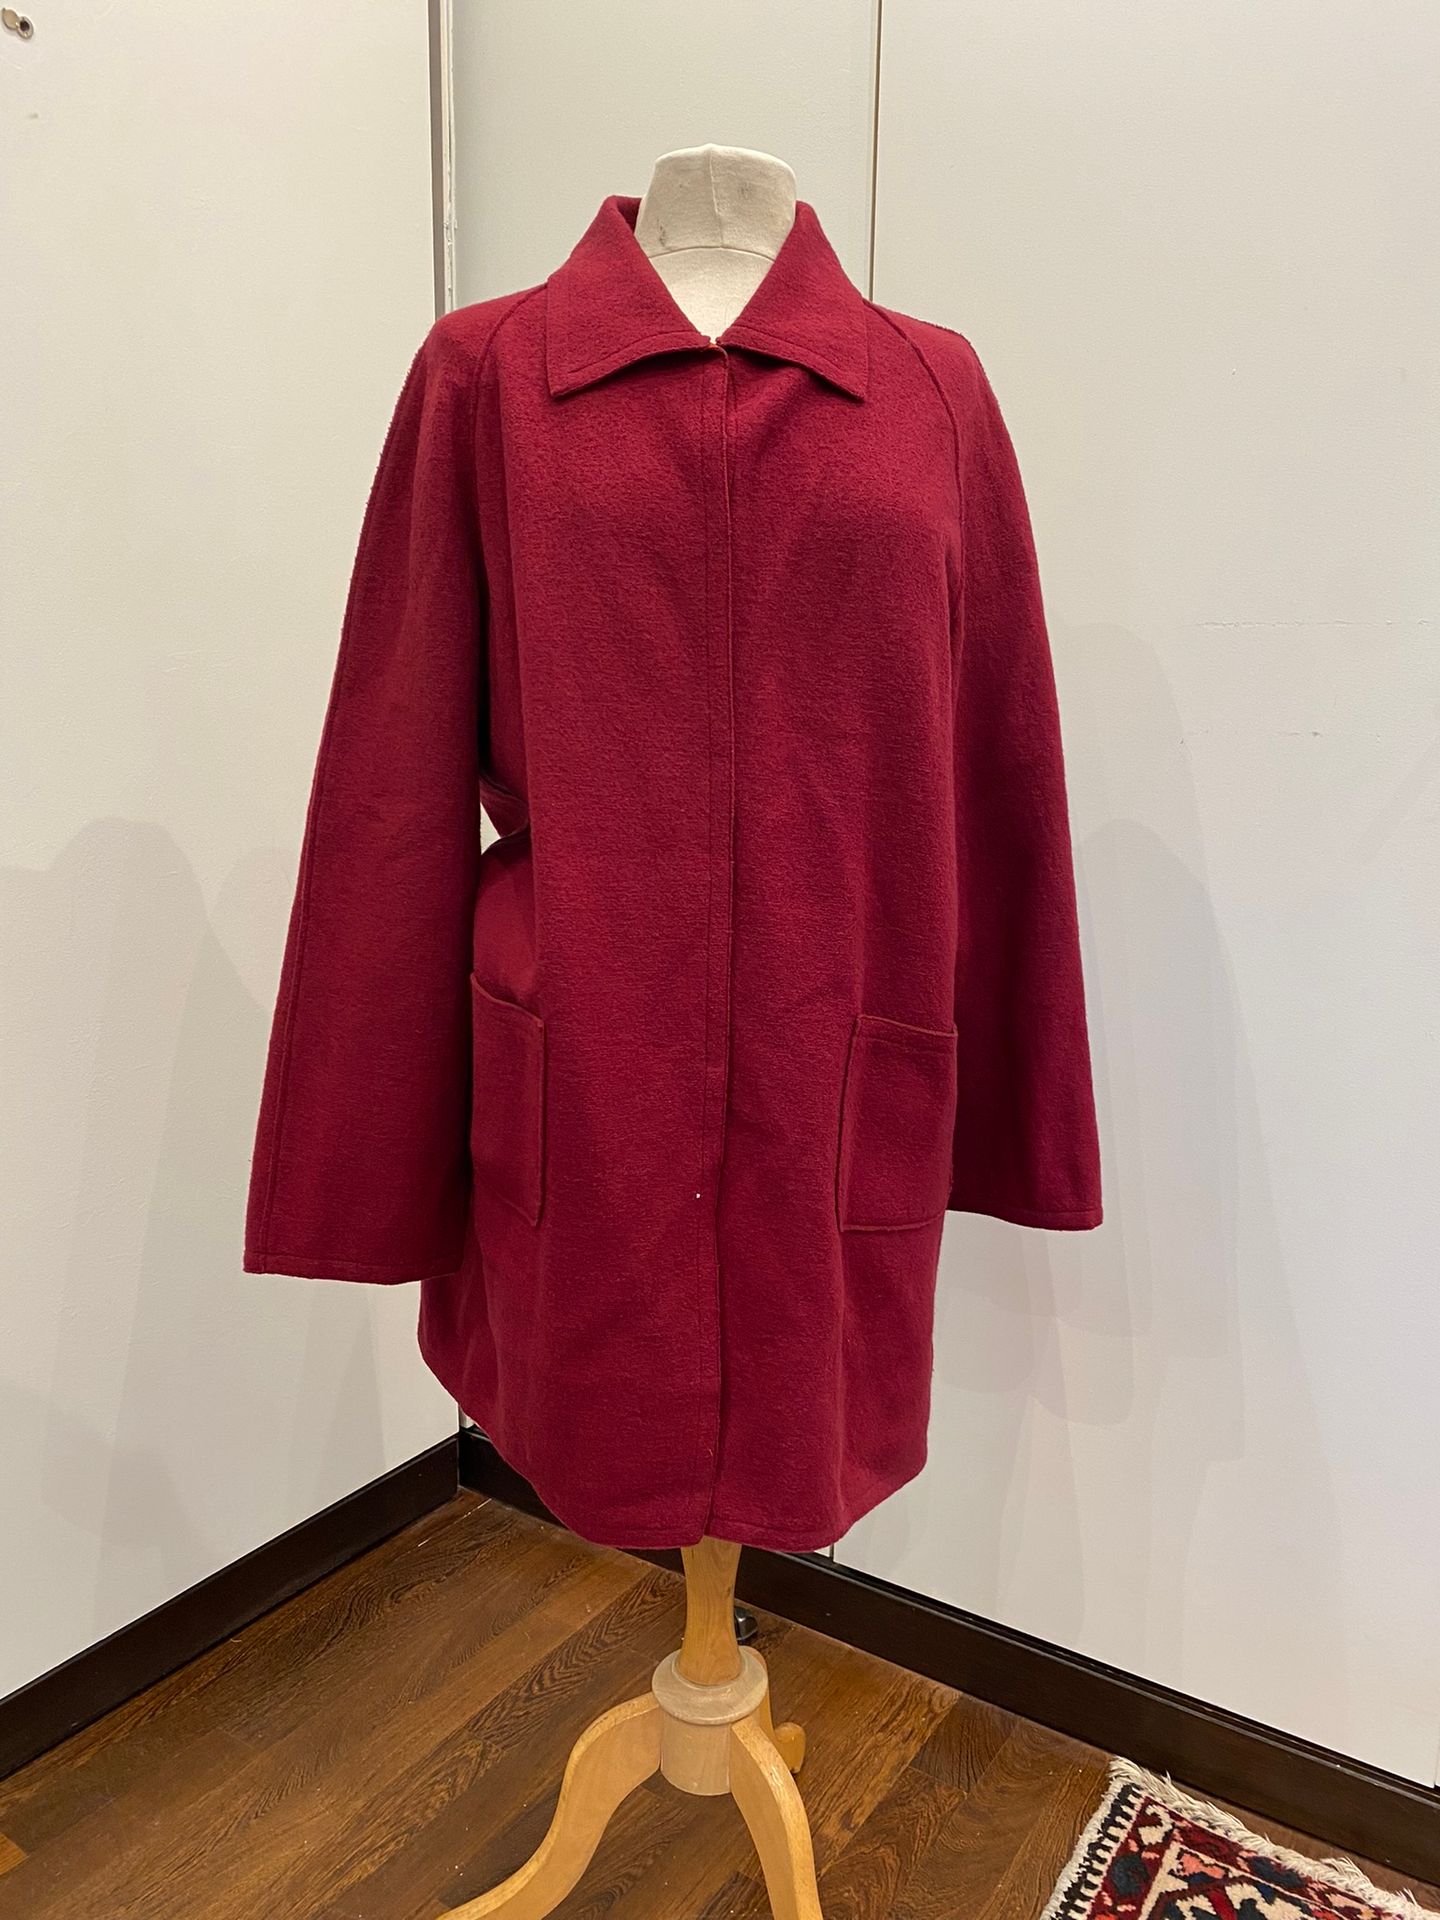 Null HANAE MORI, women's wool jacket

Size 46